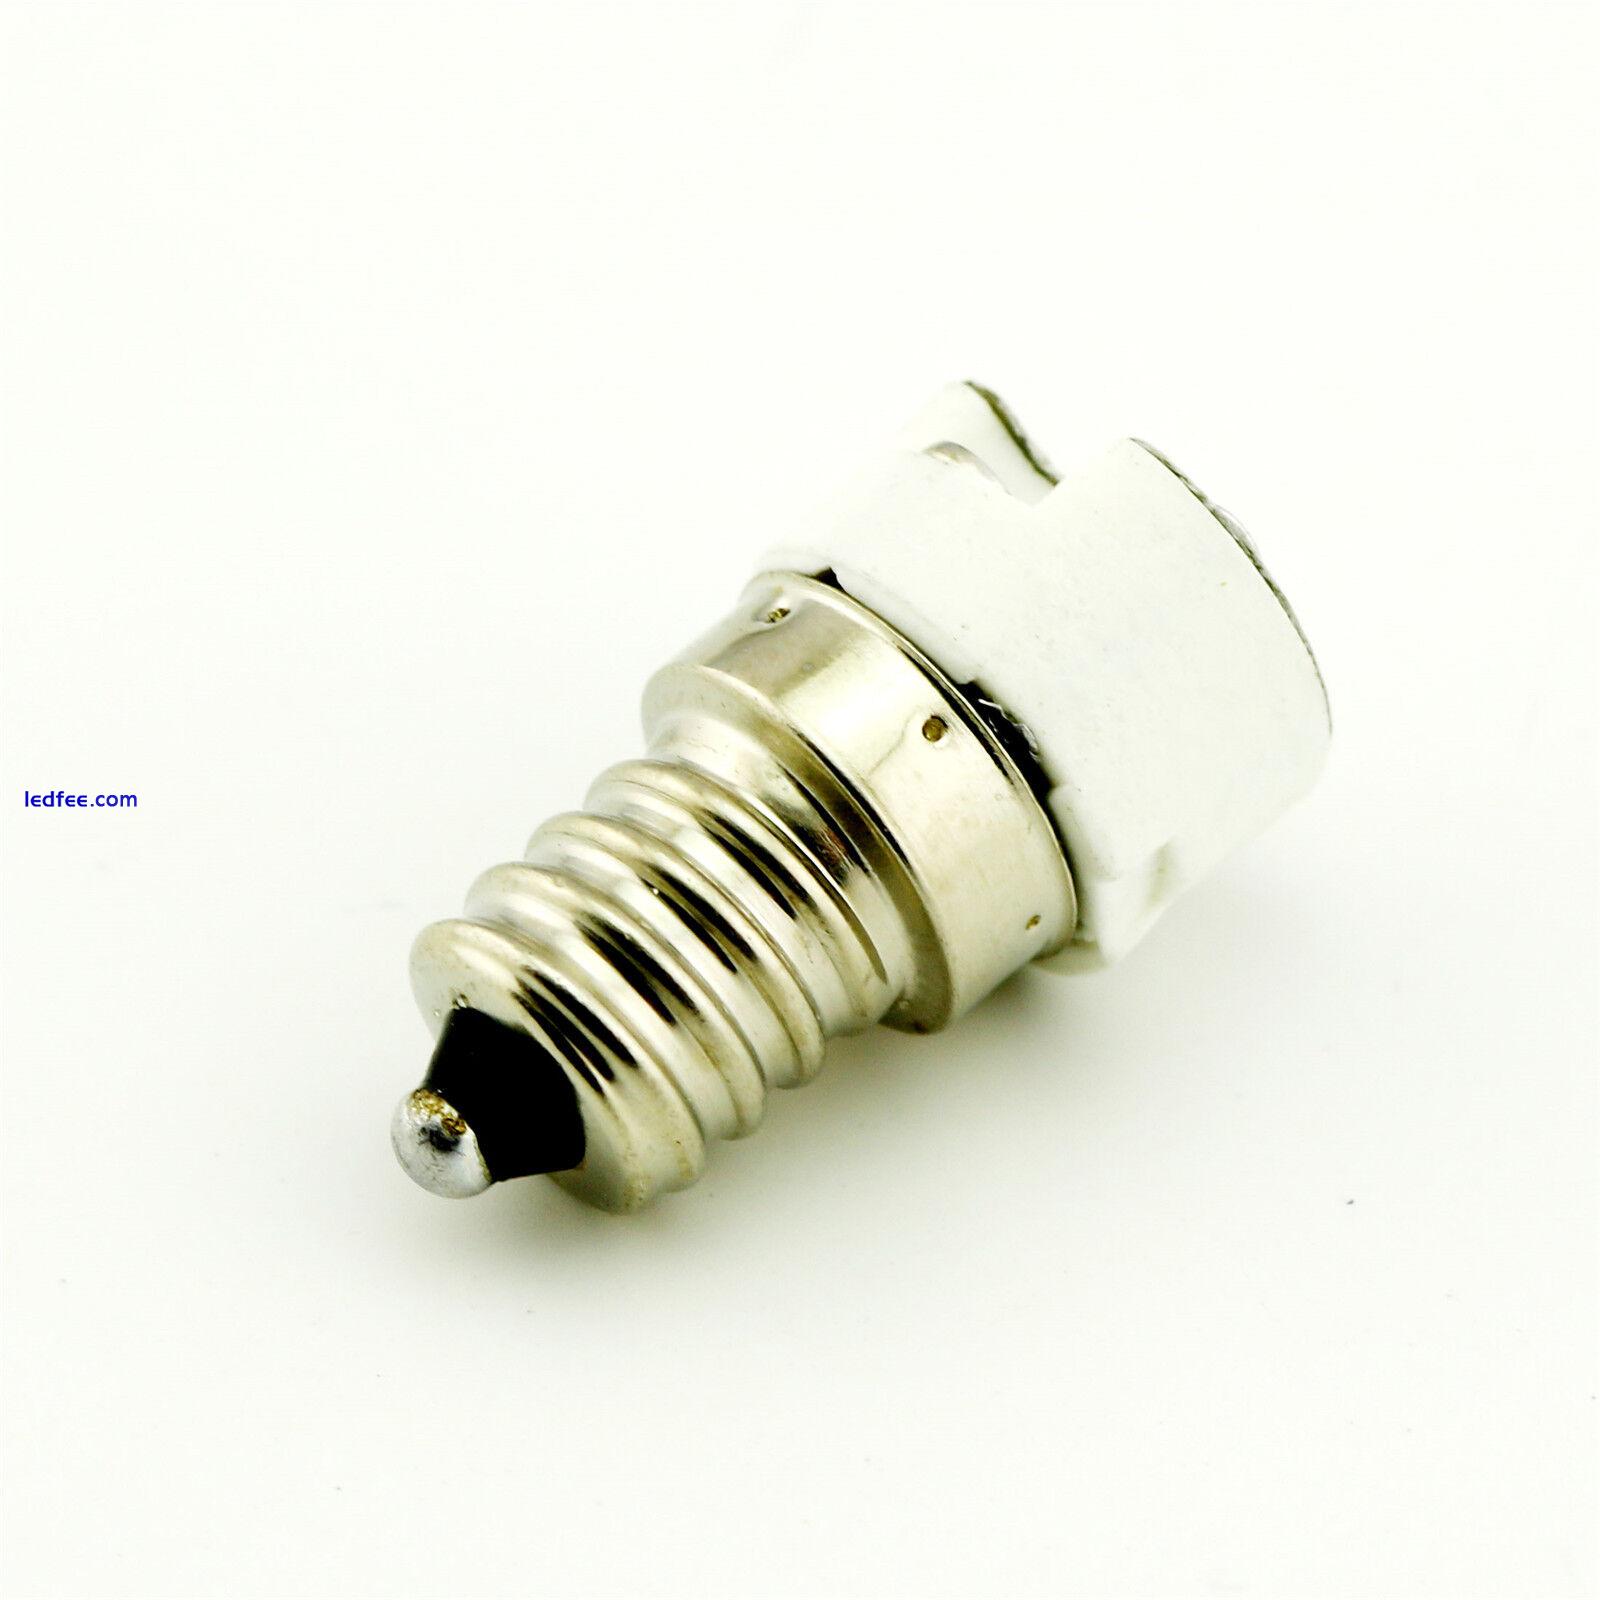 1pc E12 to MR16 G4,G5.3 Socket Led Lamp Light Bulb Holder Base Converter Adapter 1 